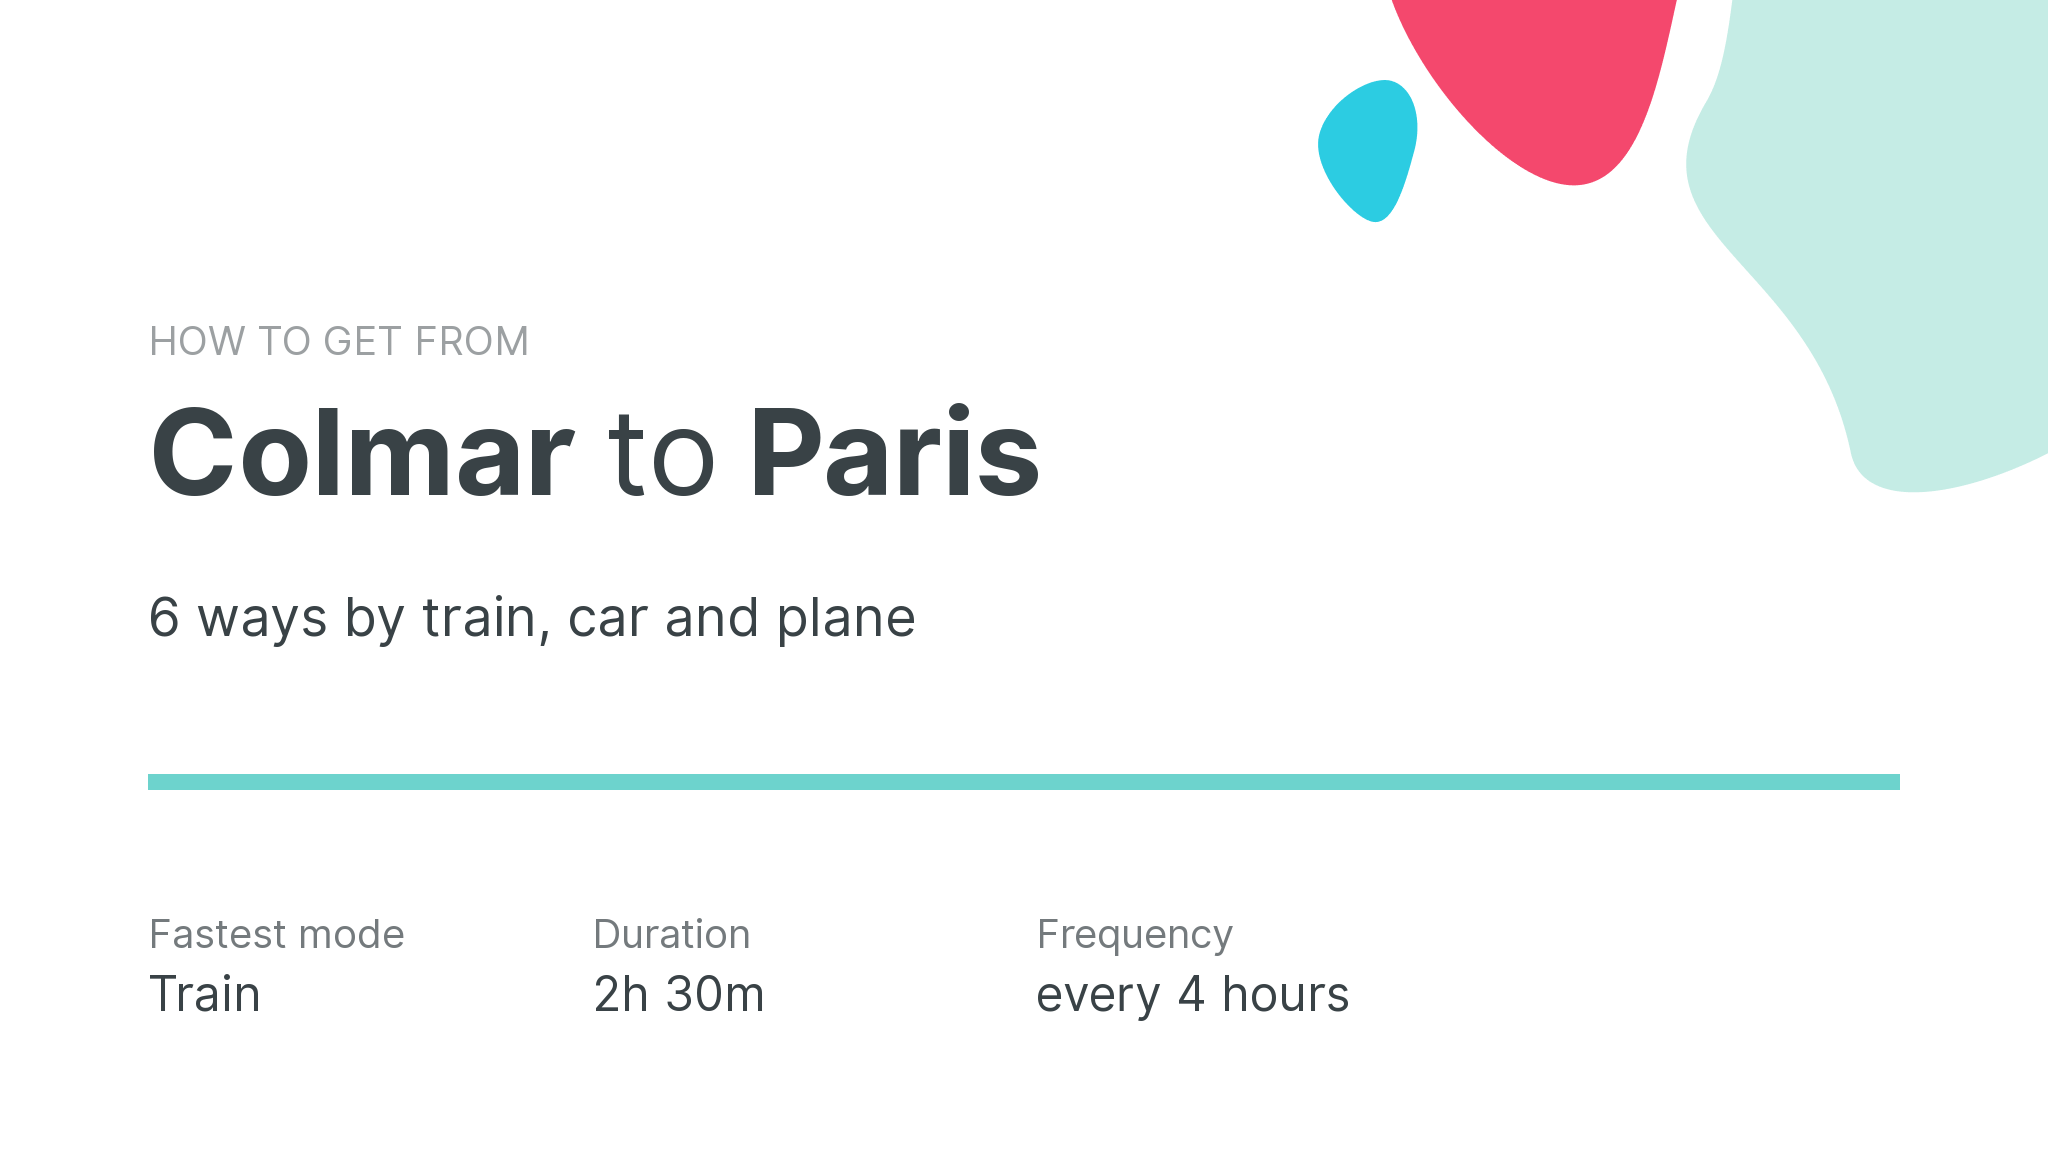 How do I get from Colmar to Paris